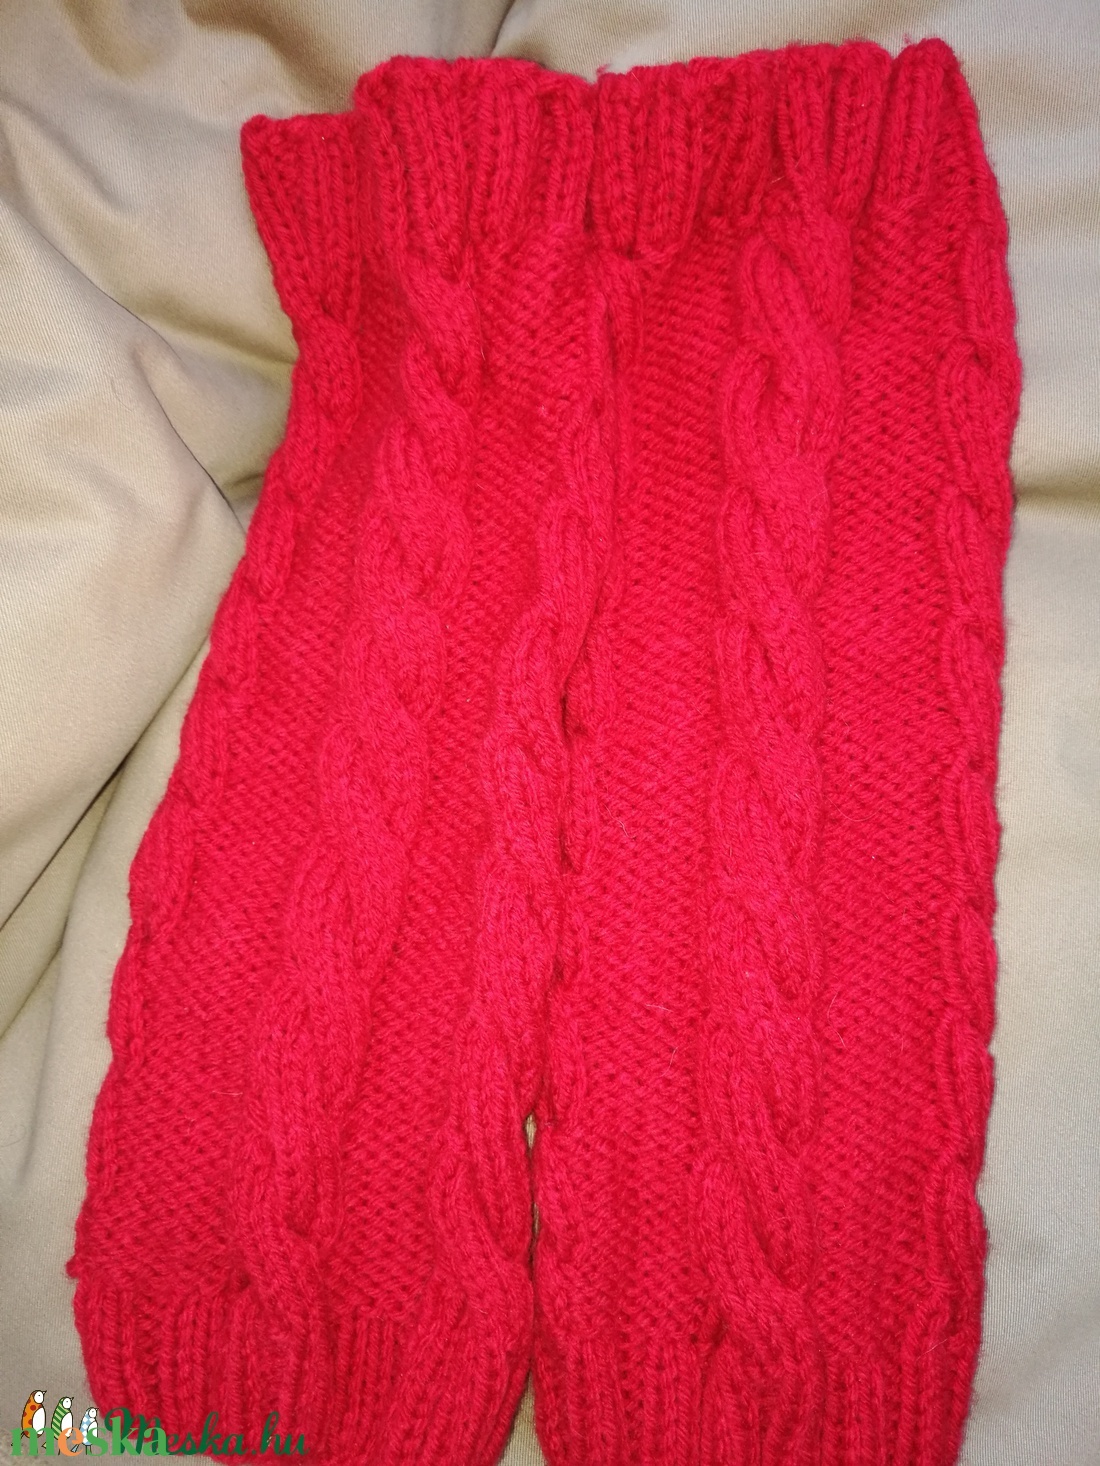 Piros csavart mintás kézi kötésű pamut lábszármelegítő eladó - ruha & divat - cipő & papucs - lábszármelegítő - Meska.hu